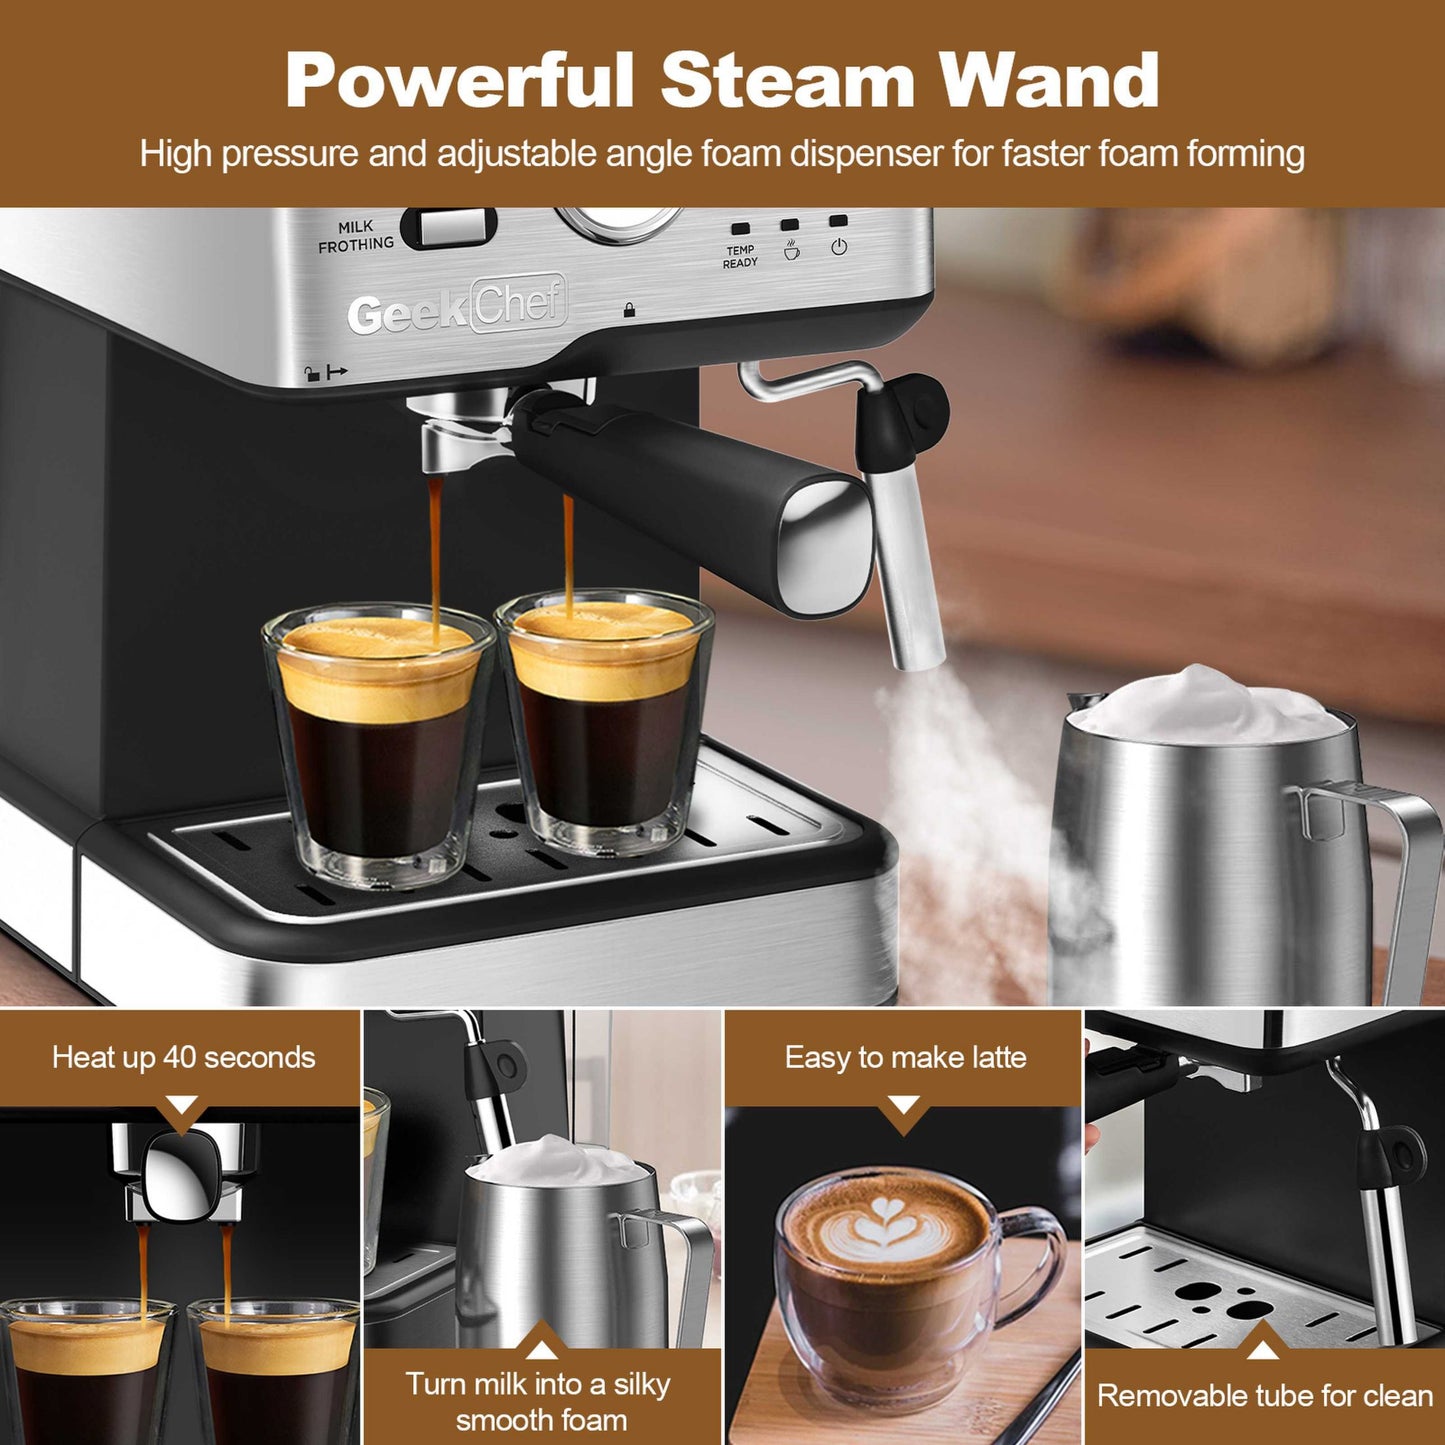 Máquina de café expresso 20 bar pressão da bomba cappuccino máquina de café com leite com filtro ese pod e bocal de leite varinha de vapor e termômetro, tanque de água de 1,5 l, proibição de café expresso em aço inoxidável na amazon